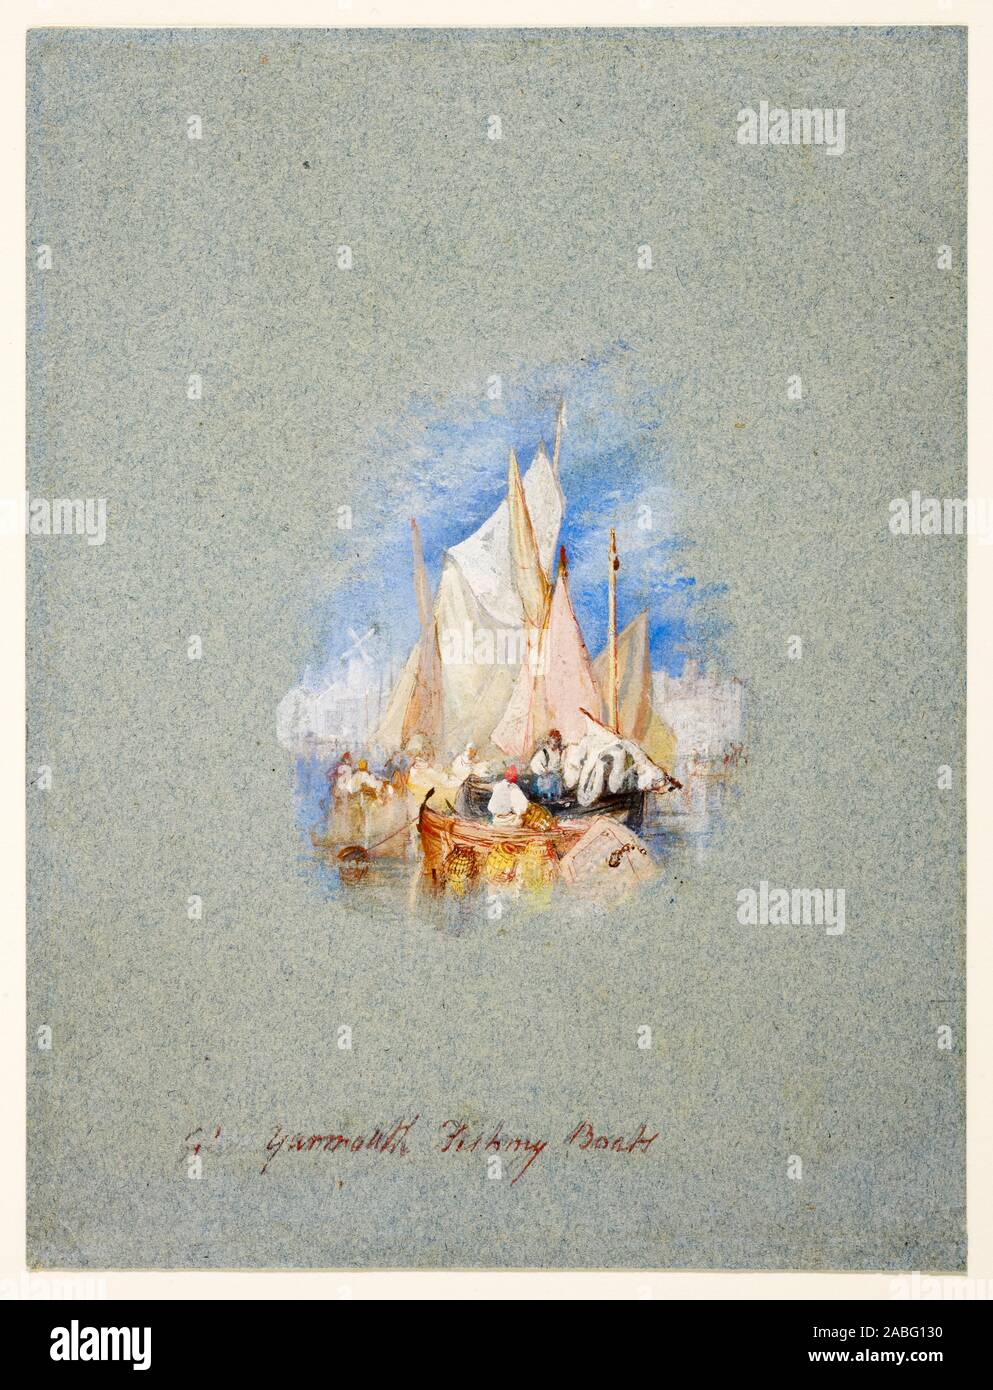 JMW Turner, Great Yarmouth des bateaux de pêche, la peinture de paysage, vers 1827 Banque D'Images